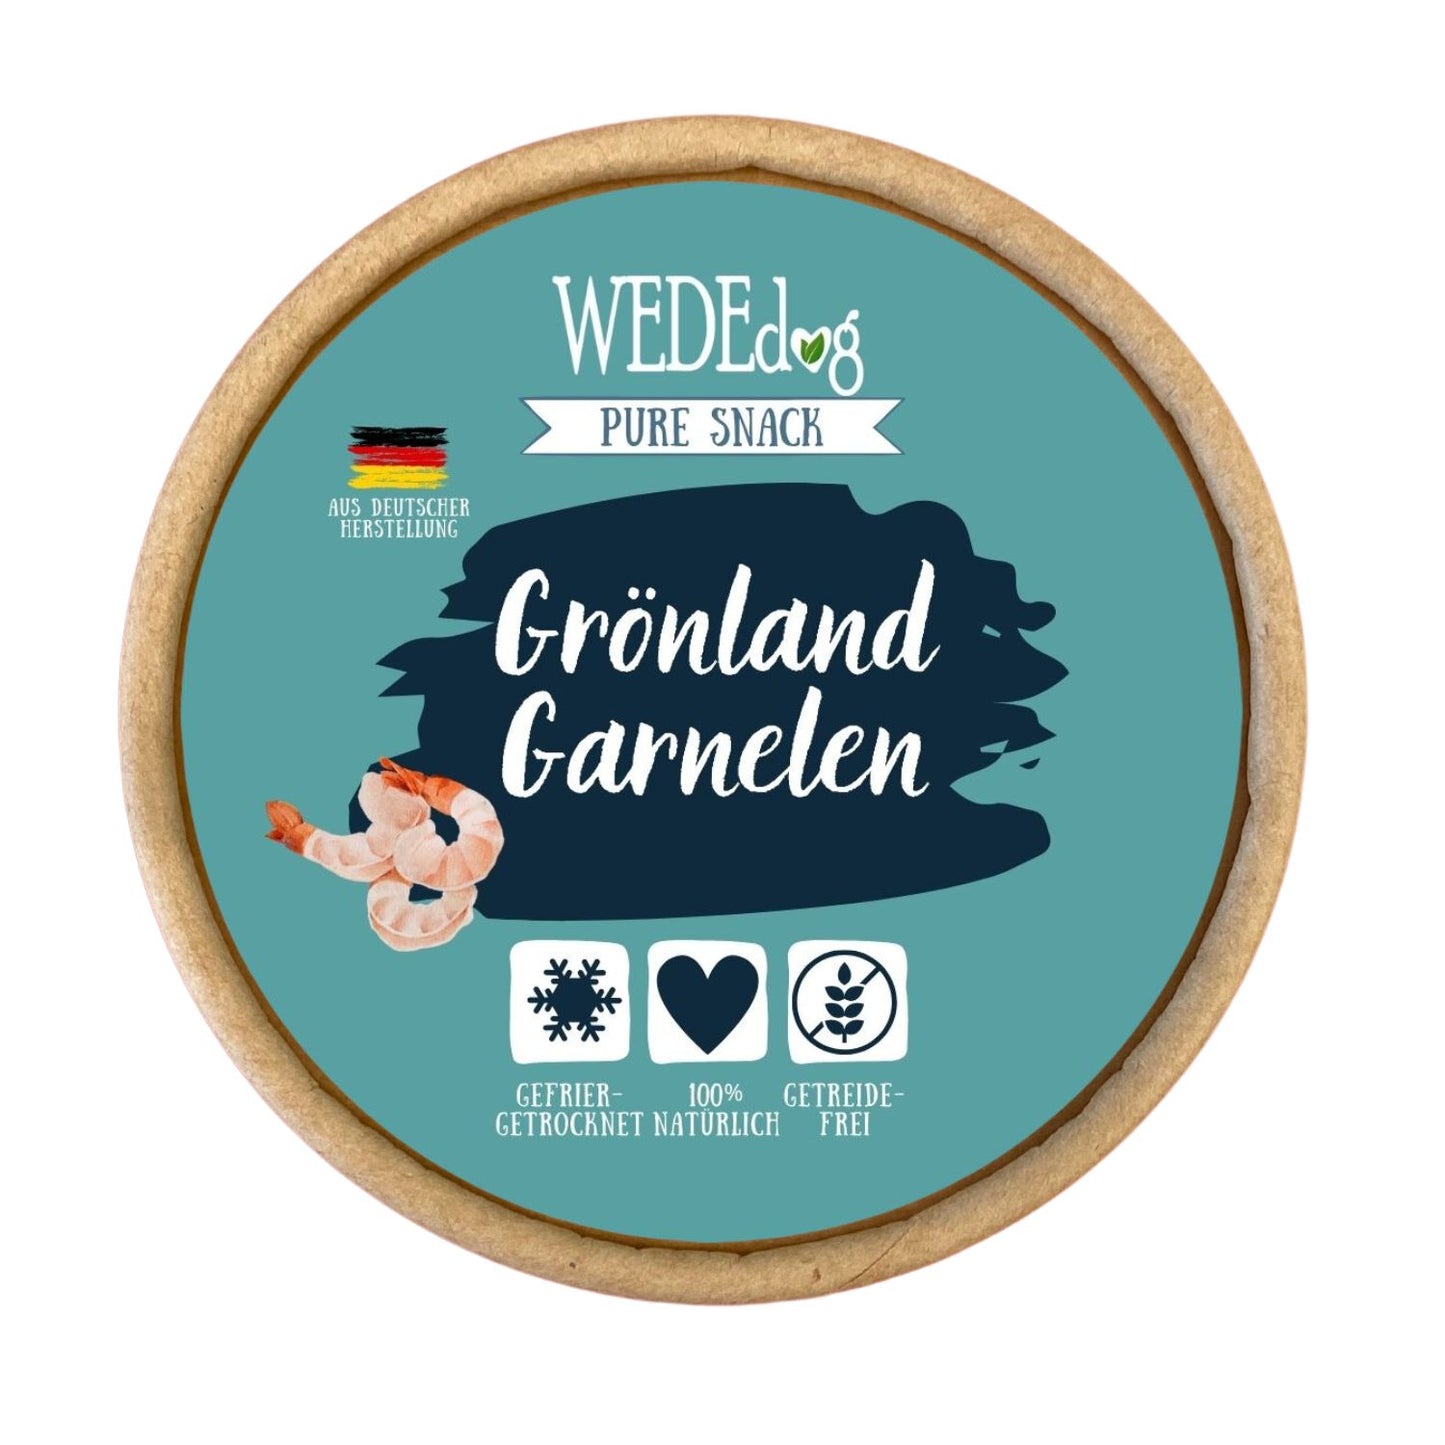 WEDEdog Pure Gefriergetrocknete Grönlandgarnelen 20g